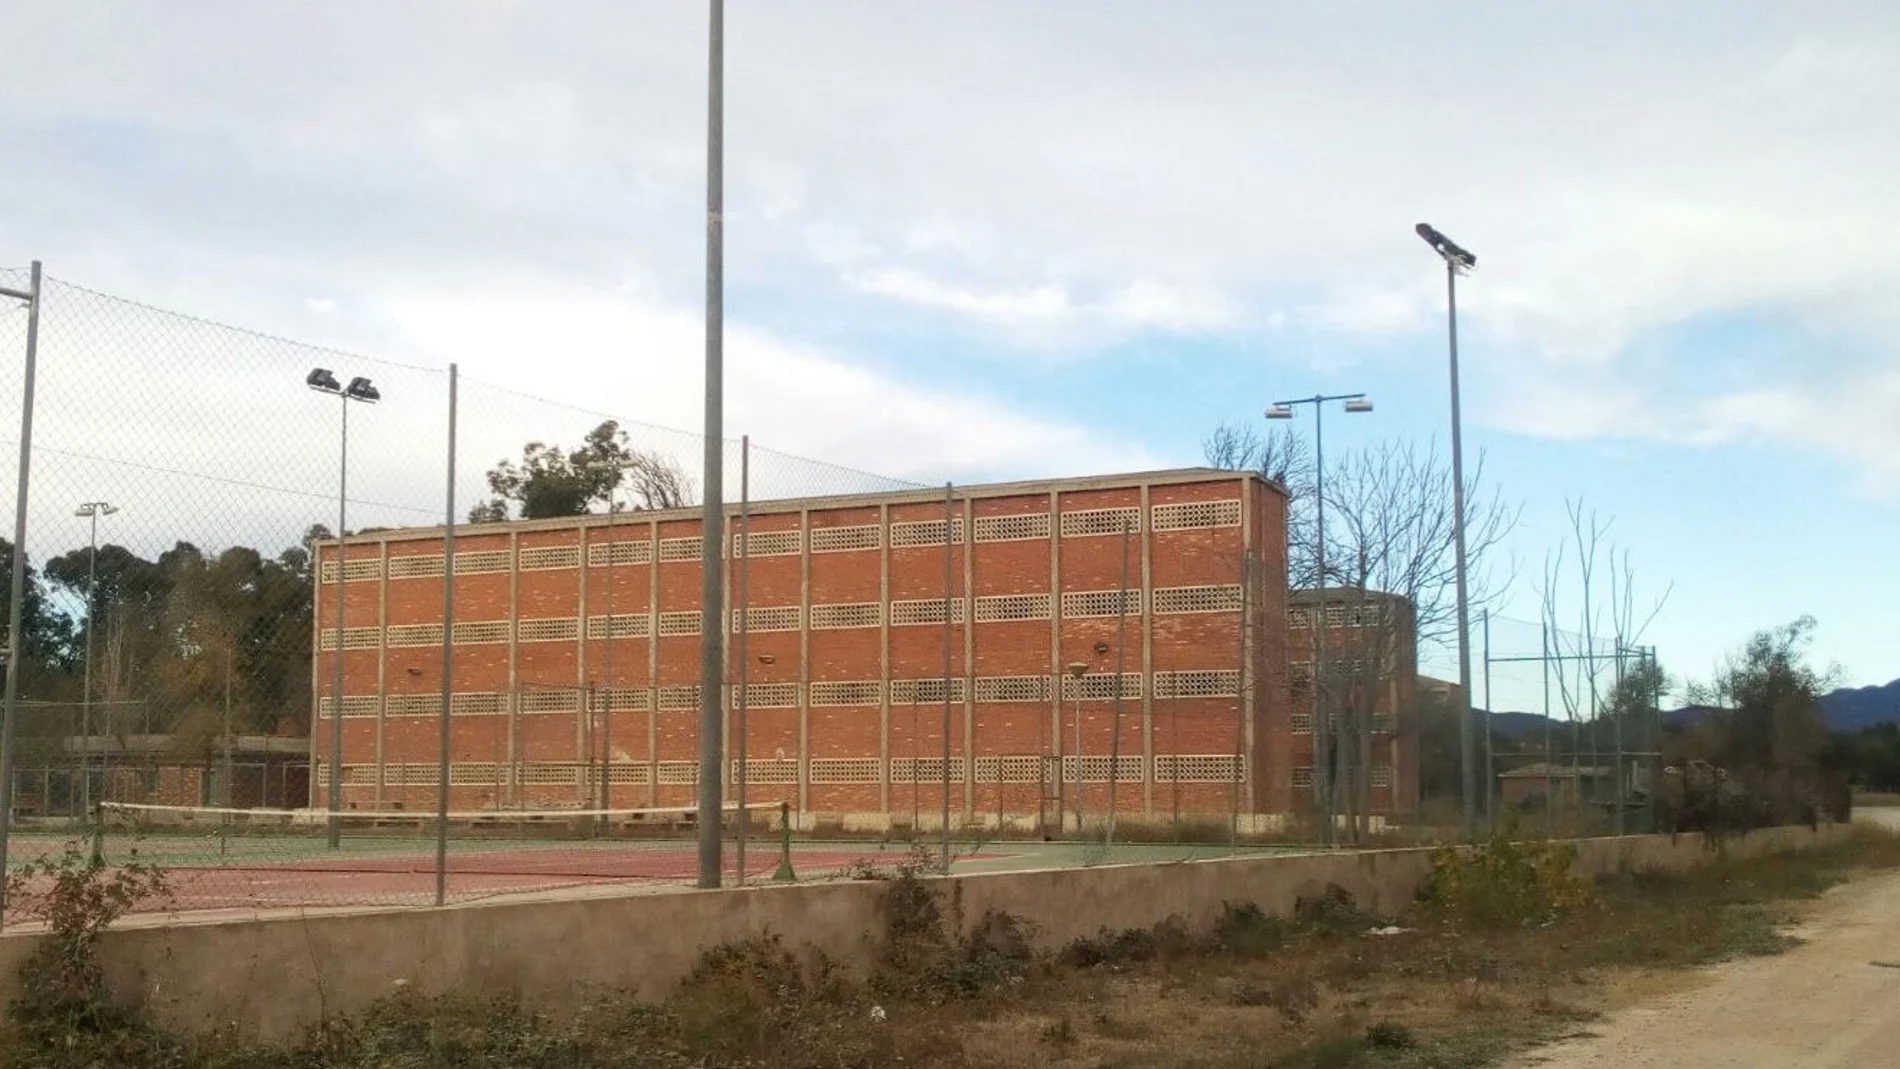 El edificio en el que se ha previsto instalar el centro de menores en Llíria tiene aluminosis. La Generalitat considera que se puede adecuar mediante una rehabilitación, pero los técnicos advierten de que sería más segura su demolición